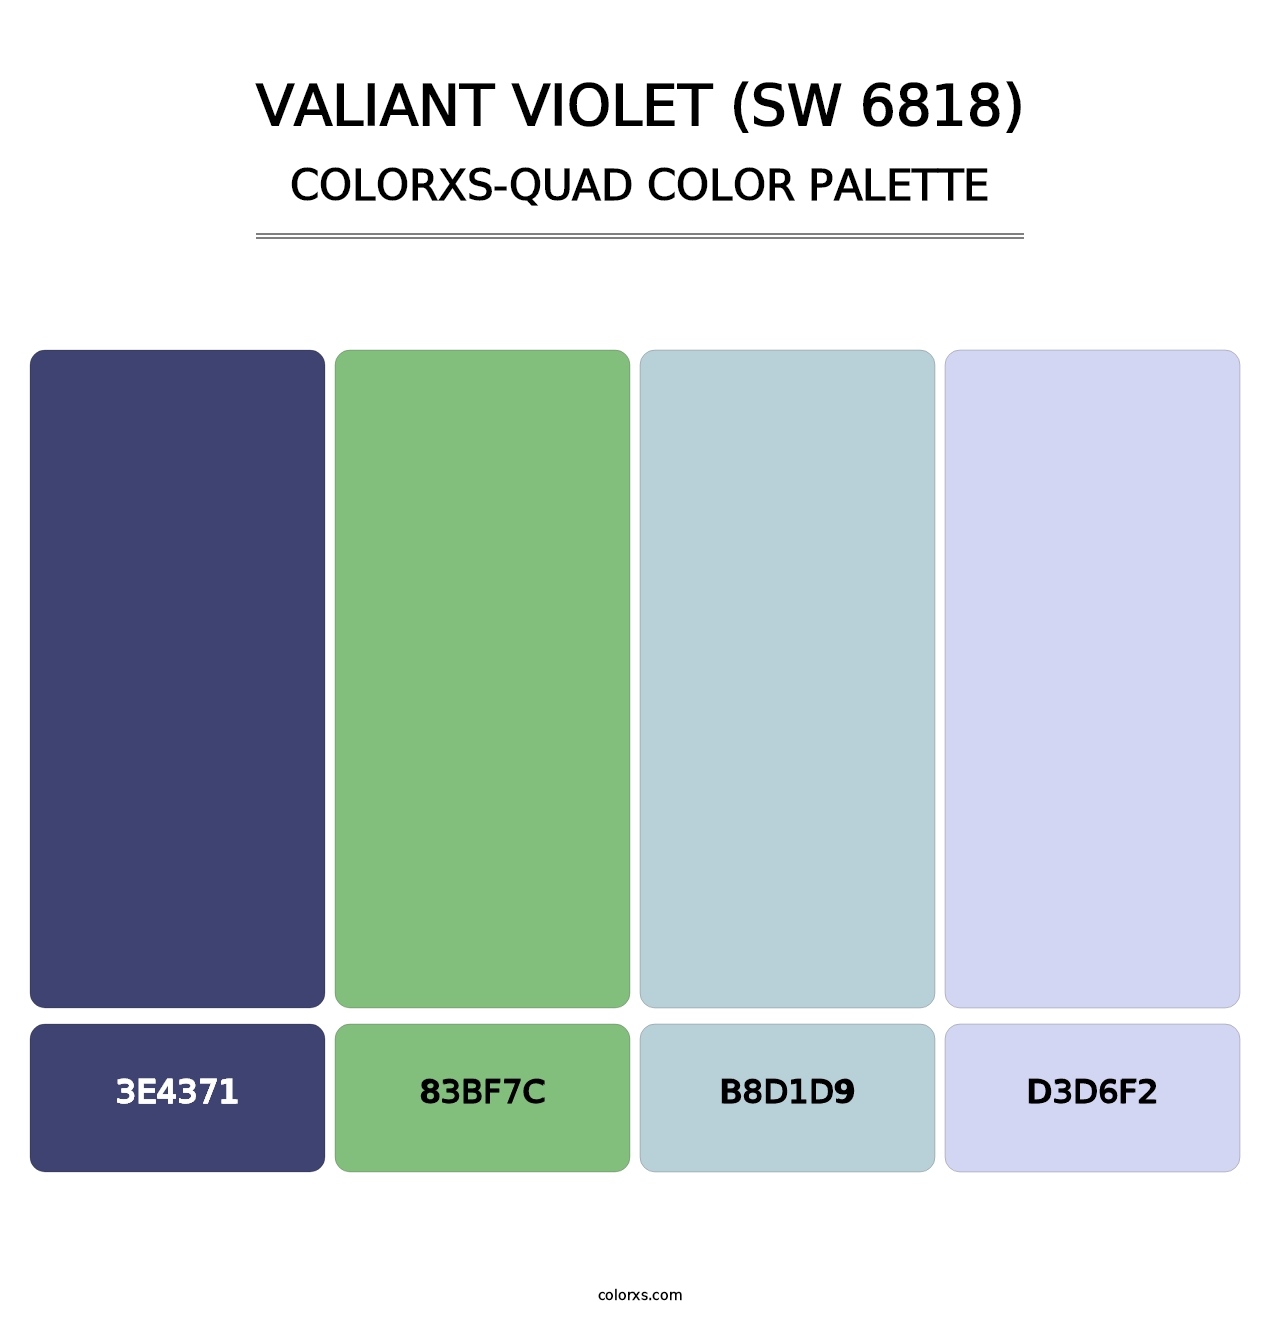 Valiant Violet (SW 6818) - Colorxs Quad Palette